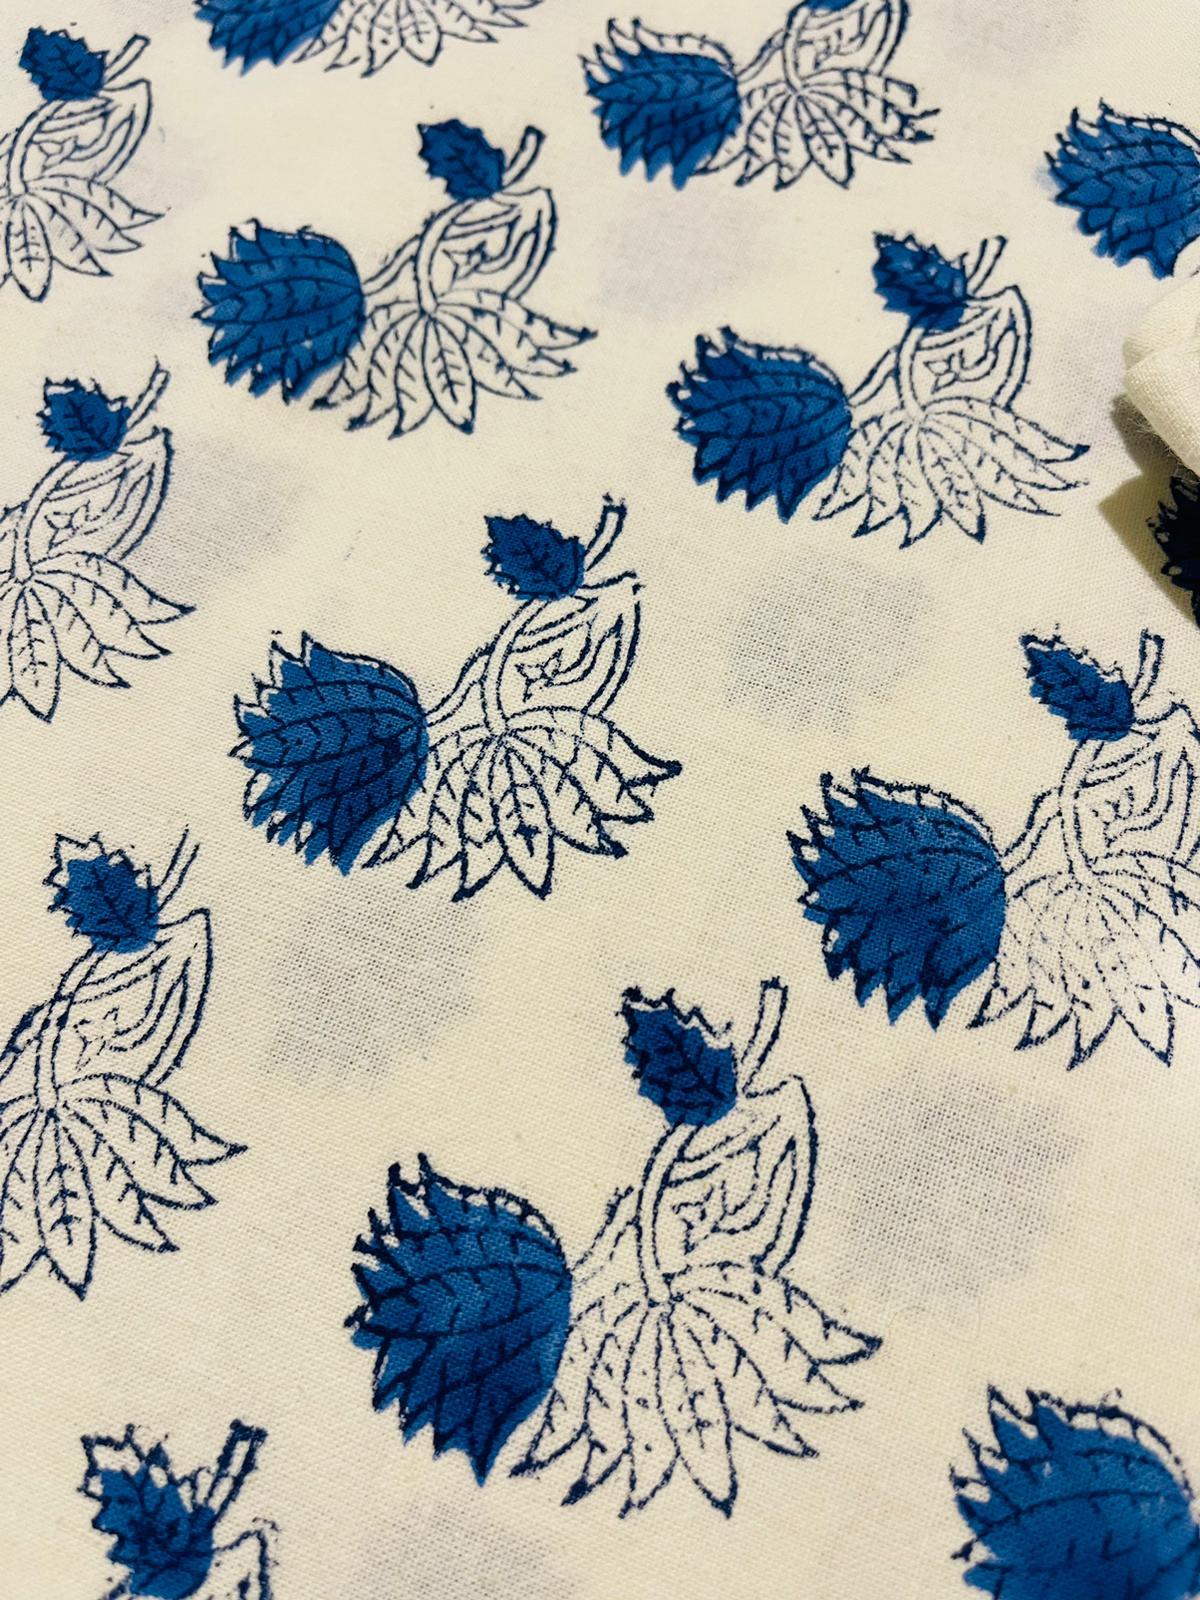 Blue Lotus Cotton Flat sheet/Bedsheet Hand Block print - Rooii by Tuvisha